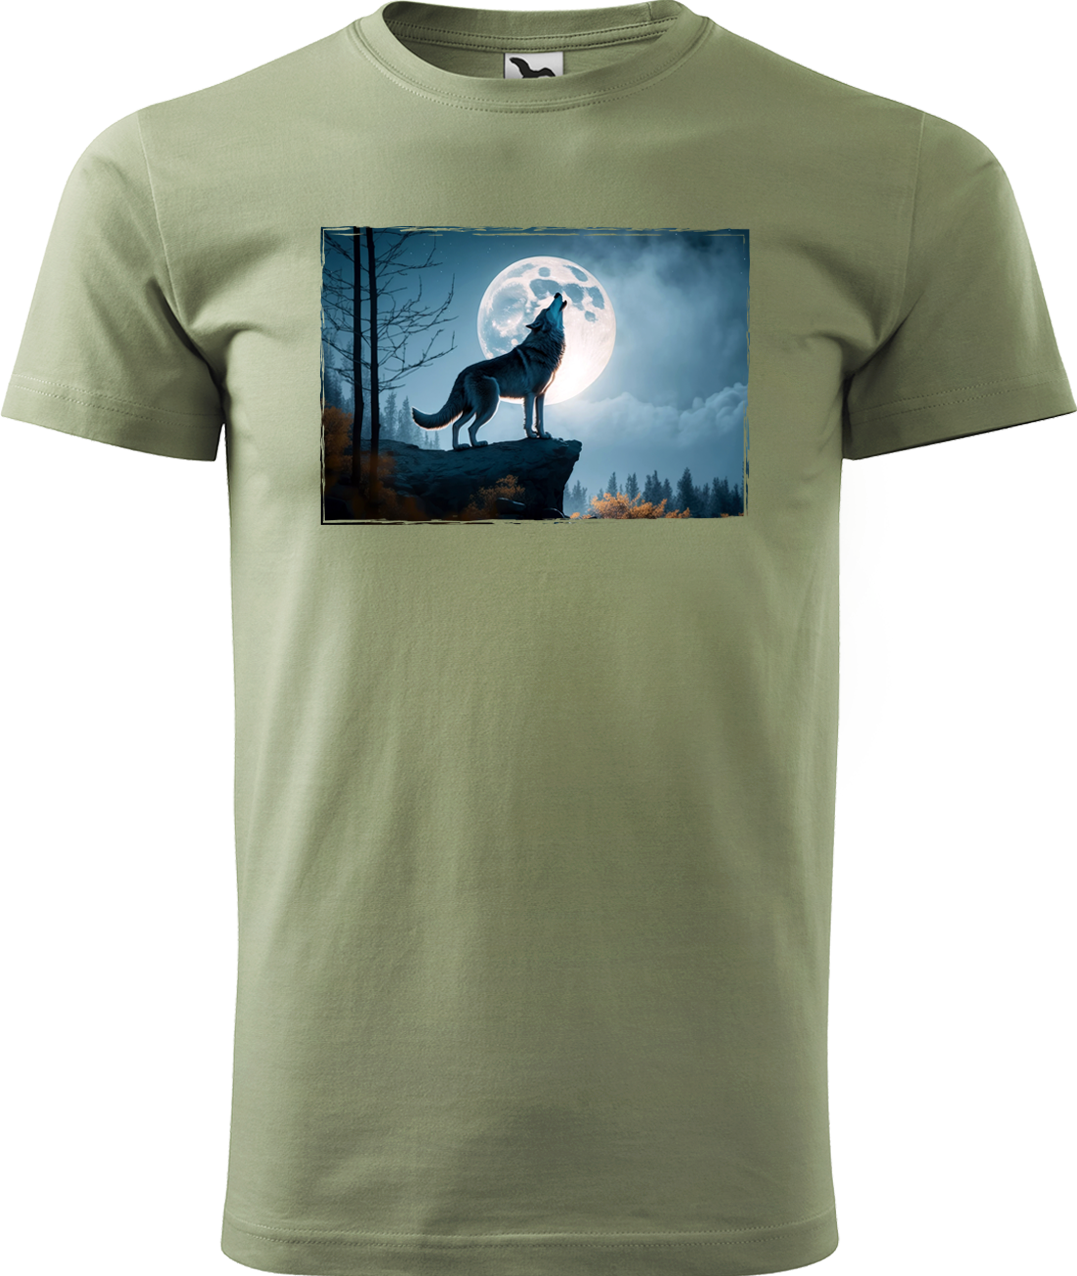 Pánské tričko s vlkem - Vyjící vlk Velikost: S, Barva: Světlá khaki (28)